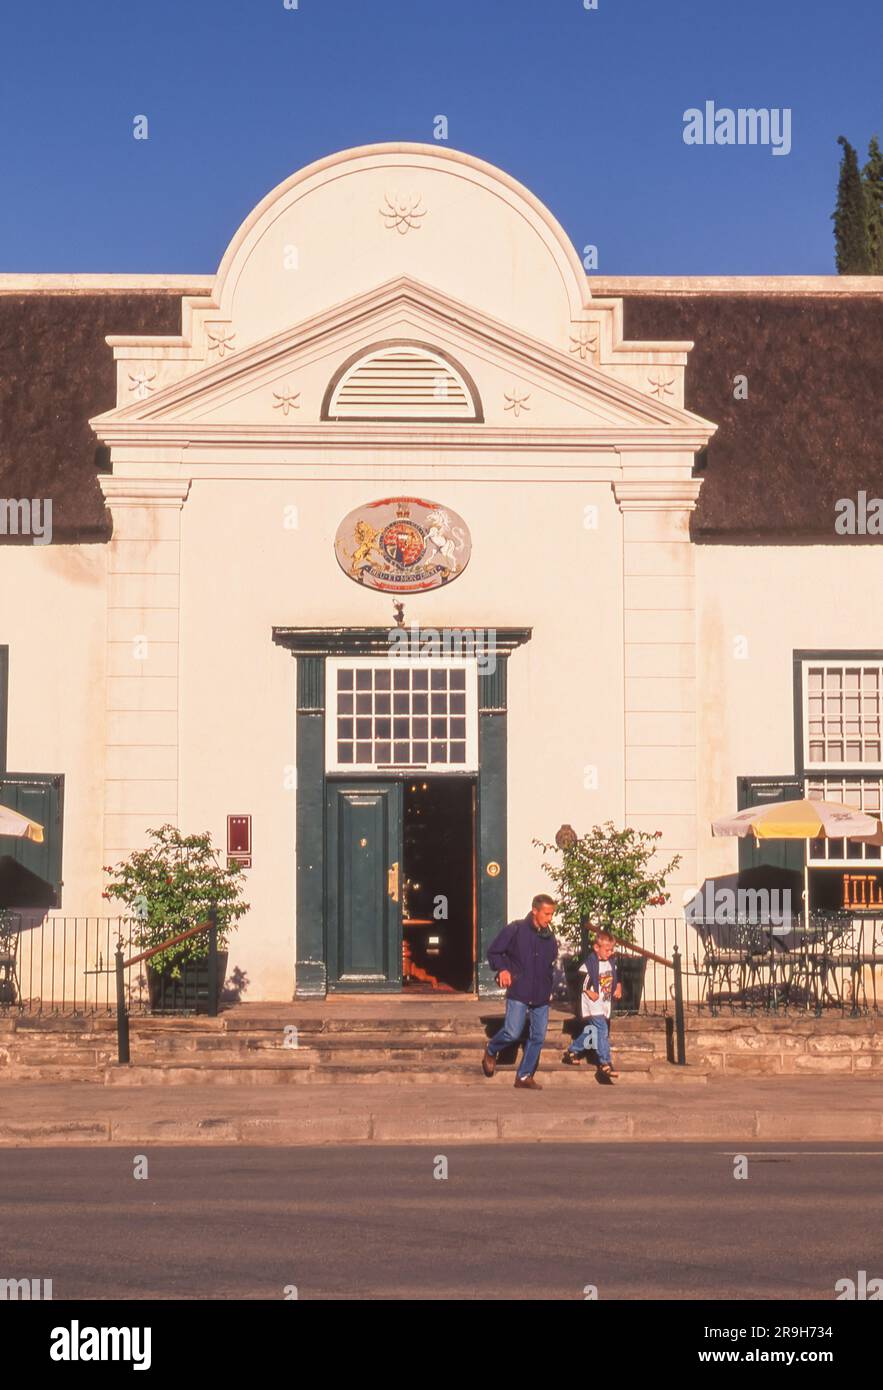 L'hôtel historique Drostdy, situé dans la ville de Graaff-Reinet, dans la province orientale du Cap en Afrique du Sud, est un bel exemple de l'architecture du Cap-Dutch. Banque D'Images